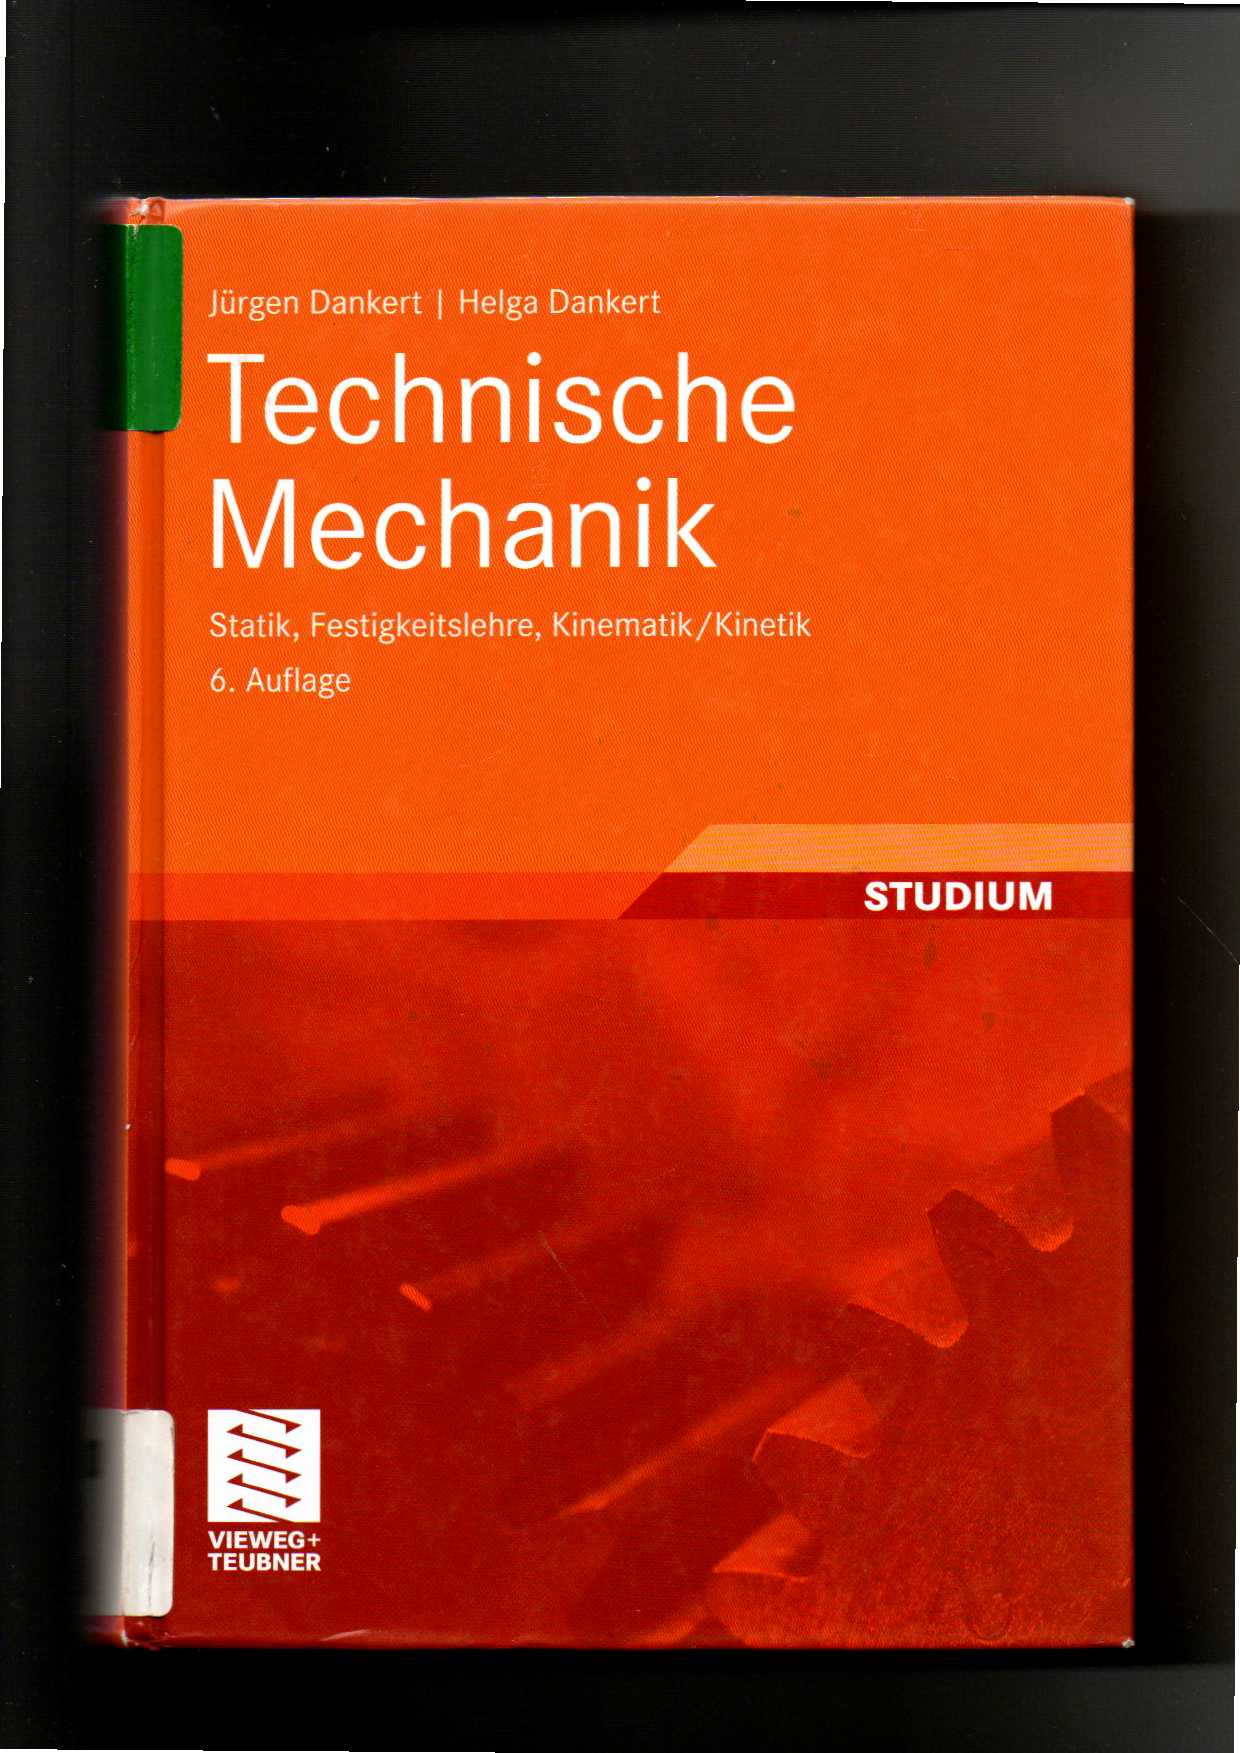 Jürgen Dankert, Technische Mechanik : Statik, Festigkeitslehre, Kinematik / 6. Auflage  6. Auflage - Dankert, Jürgen und Helga Dankert